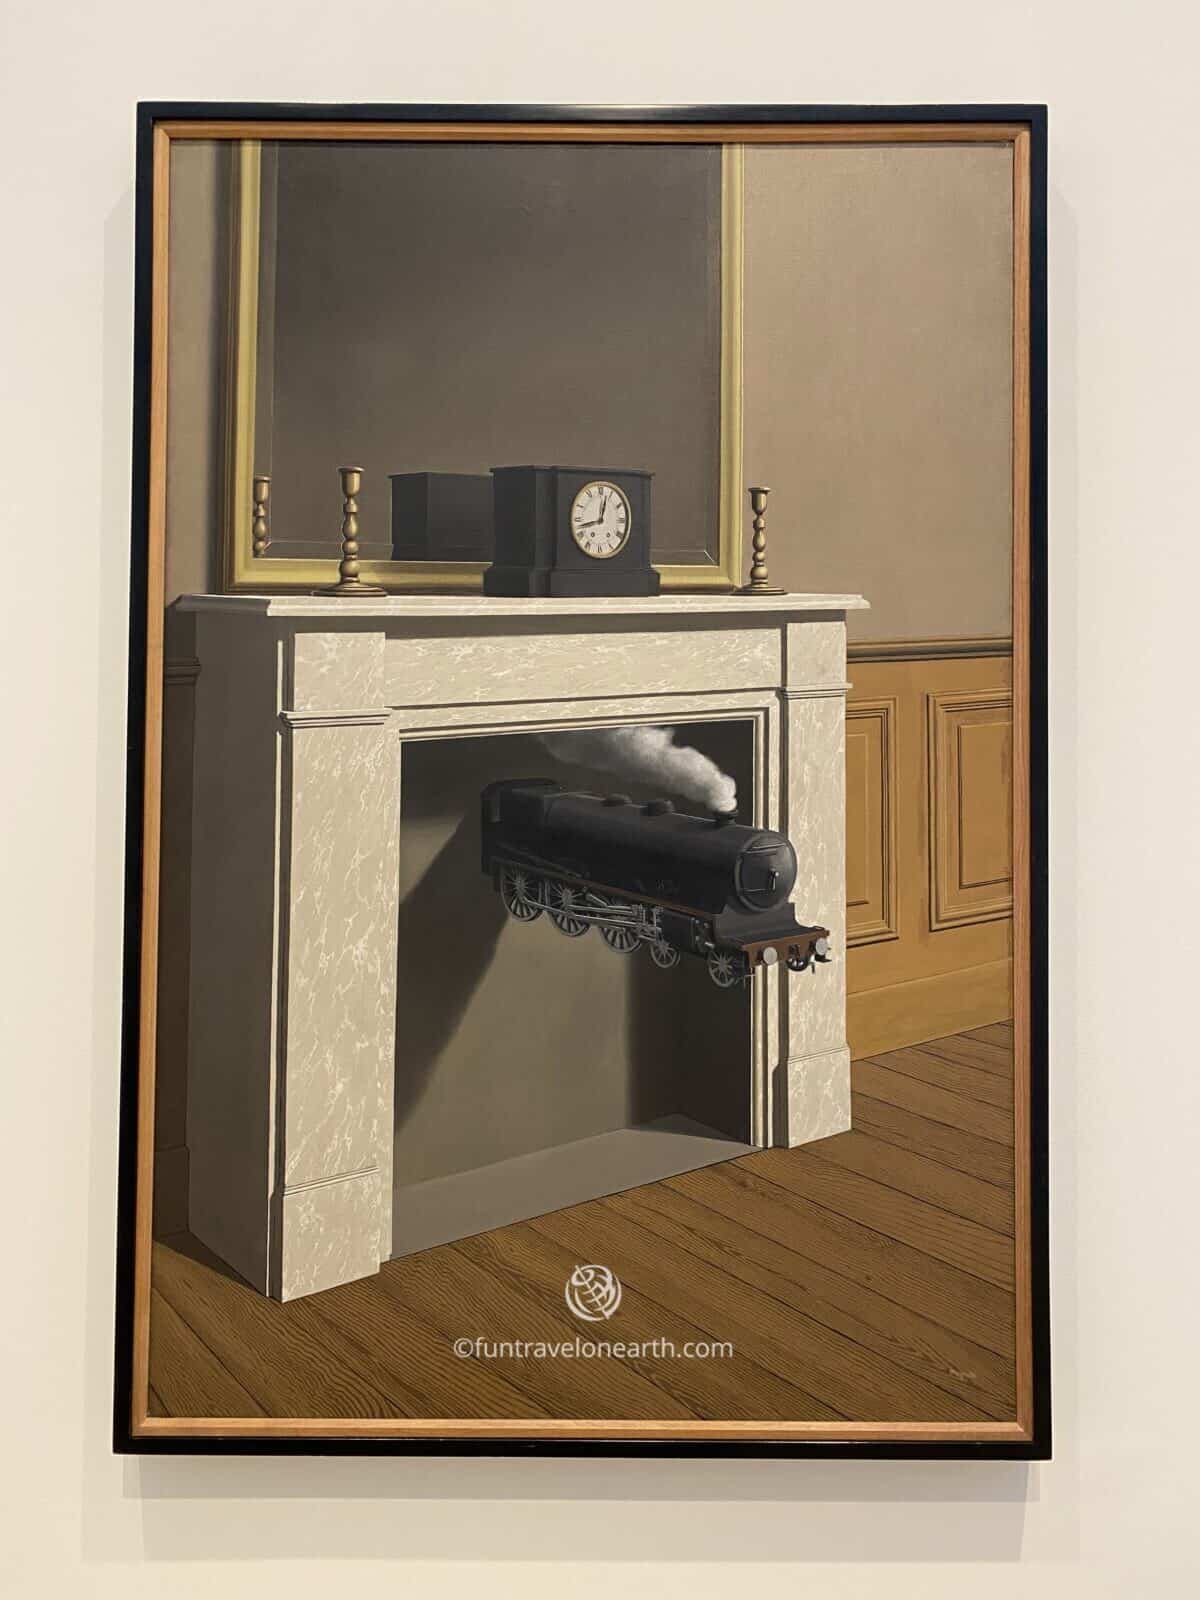 René Magritte "Time Transfixed(La durée poignardé)" ,The Art Institute of Chicago